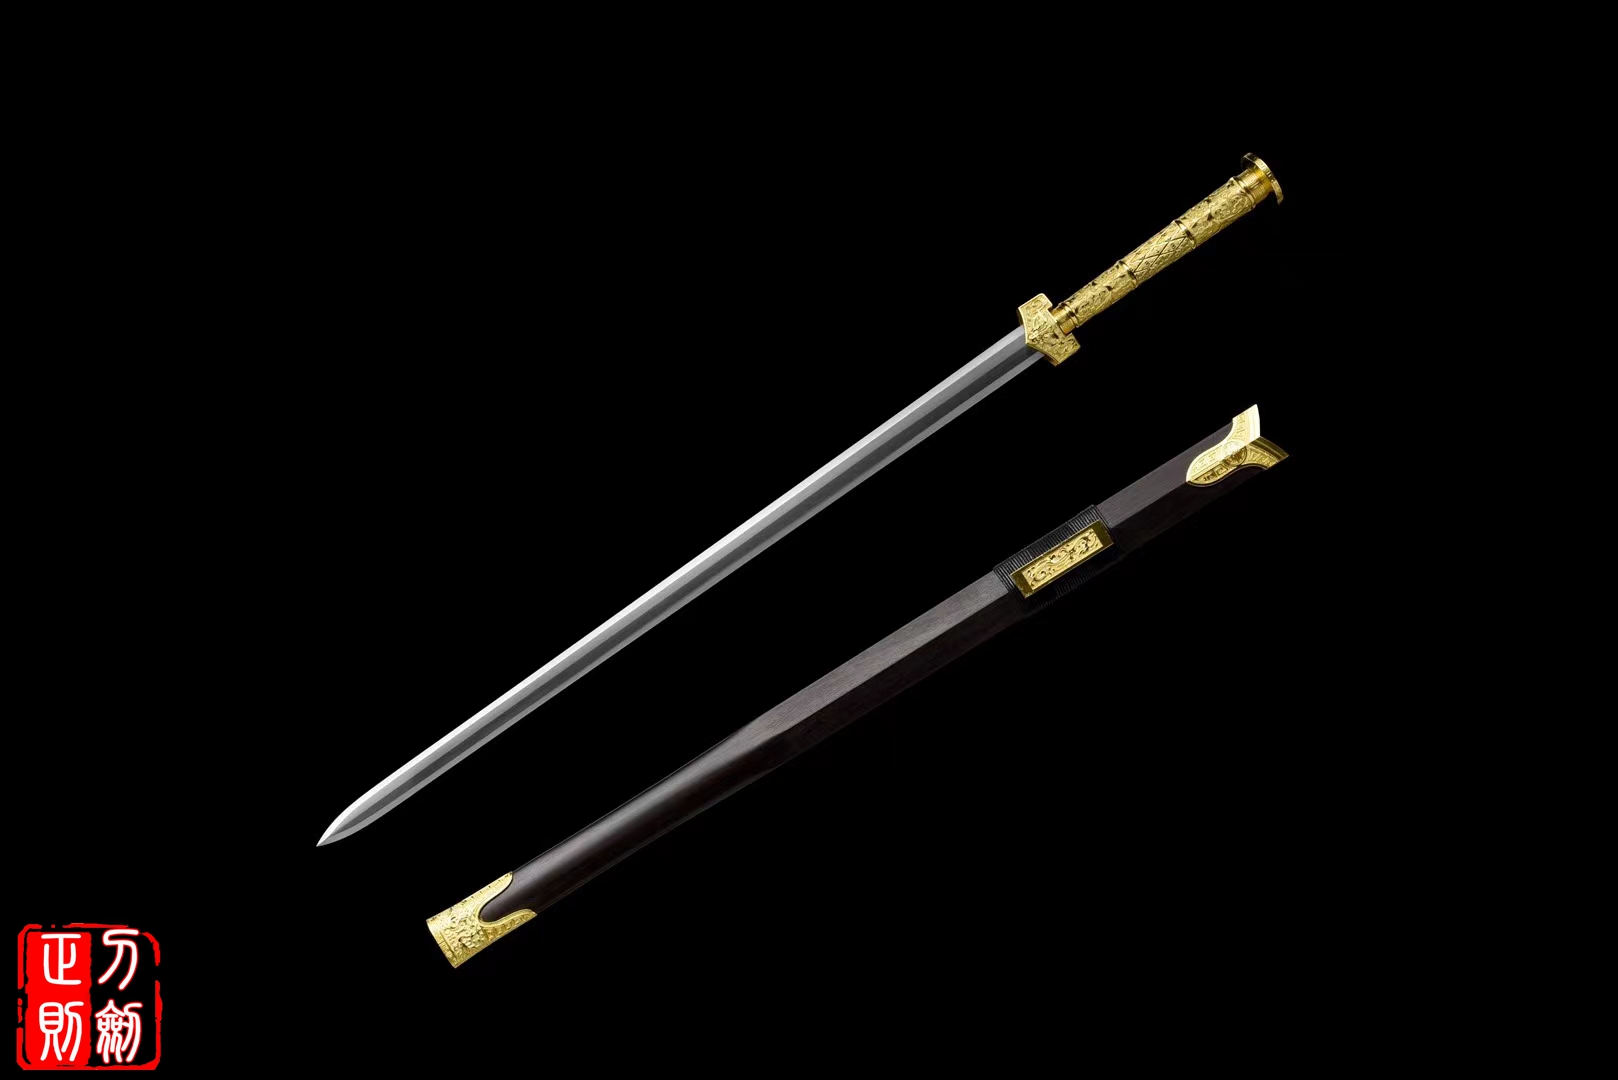 八面汉剑,汉剑,中国汉剑,龙泉正则宝剑,汉剑图片